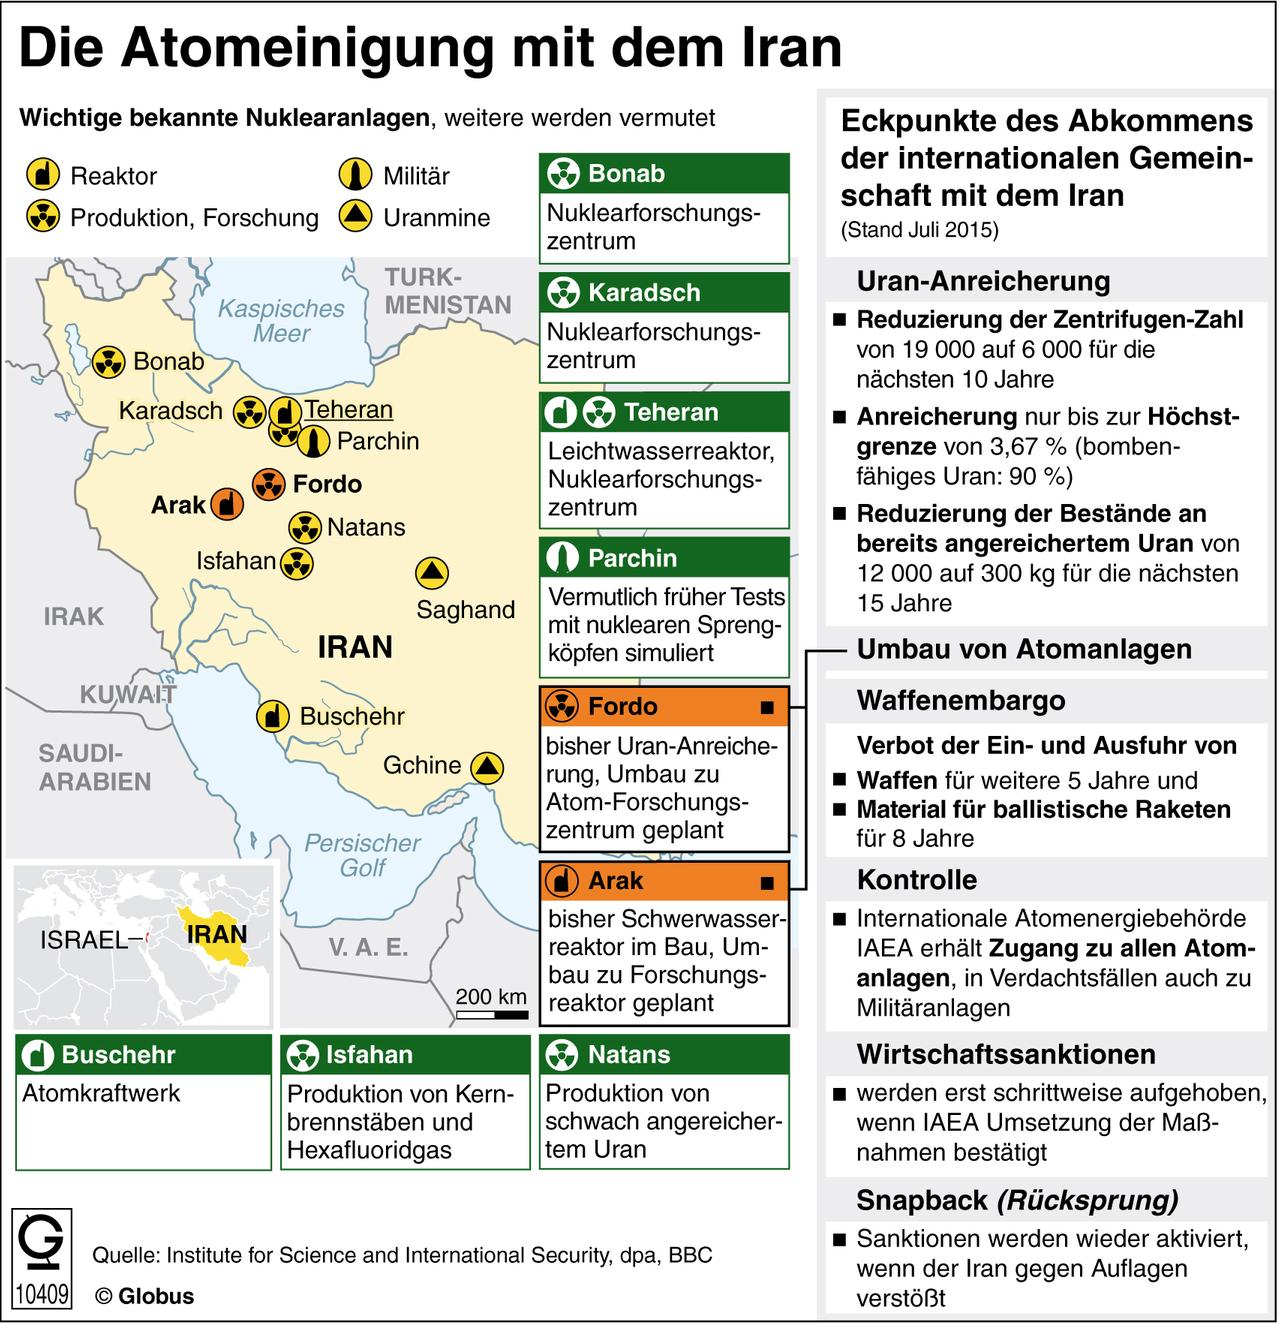 Die Grafik zeigt, wie sich die Atomeinigung mit dem Iran auf das Land auswirkt und zu welchen weiteren Konsequenzen sie führt.